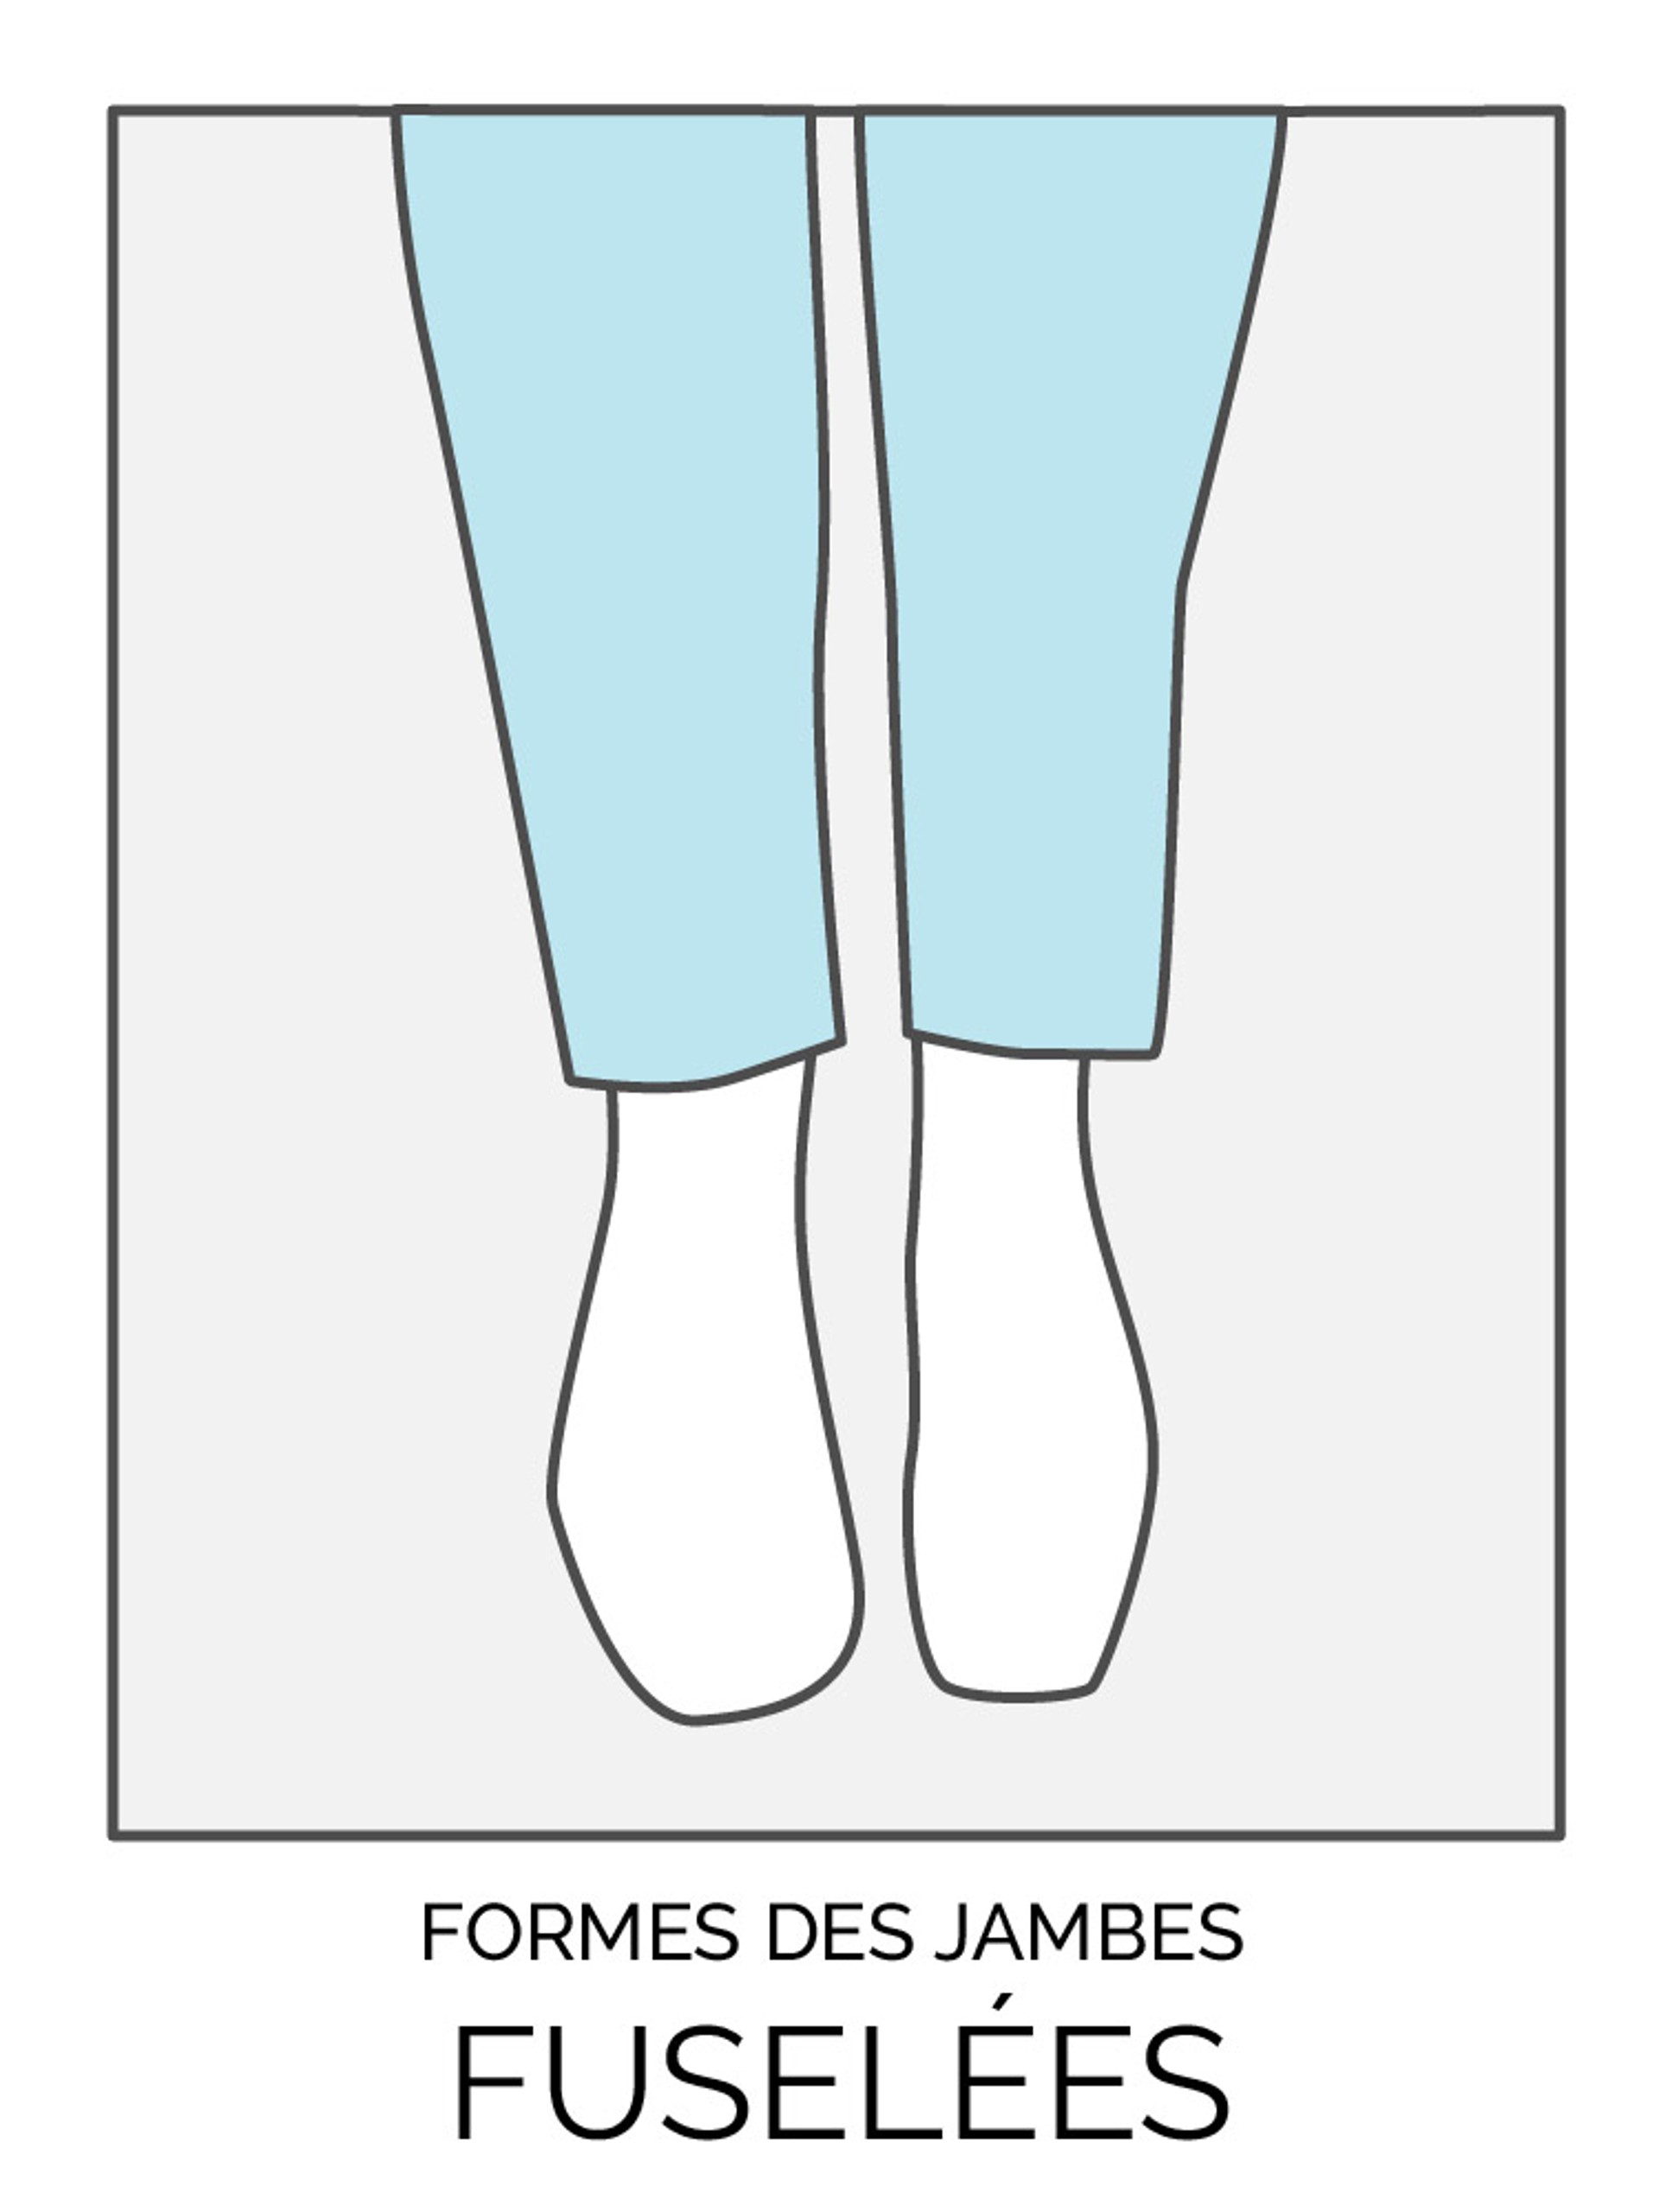 Formes des jambes: droites